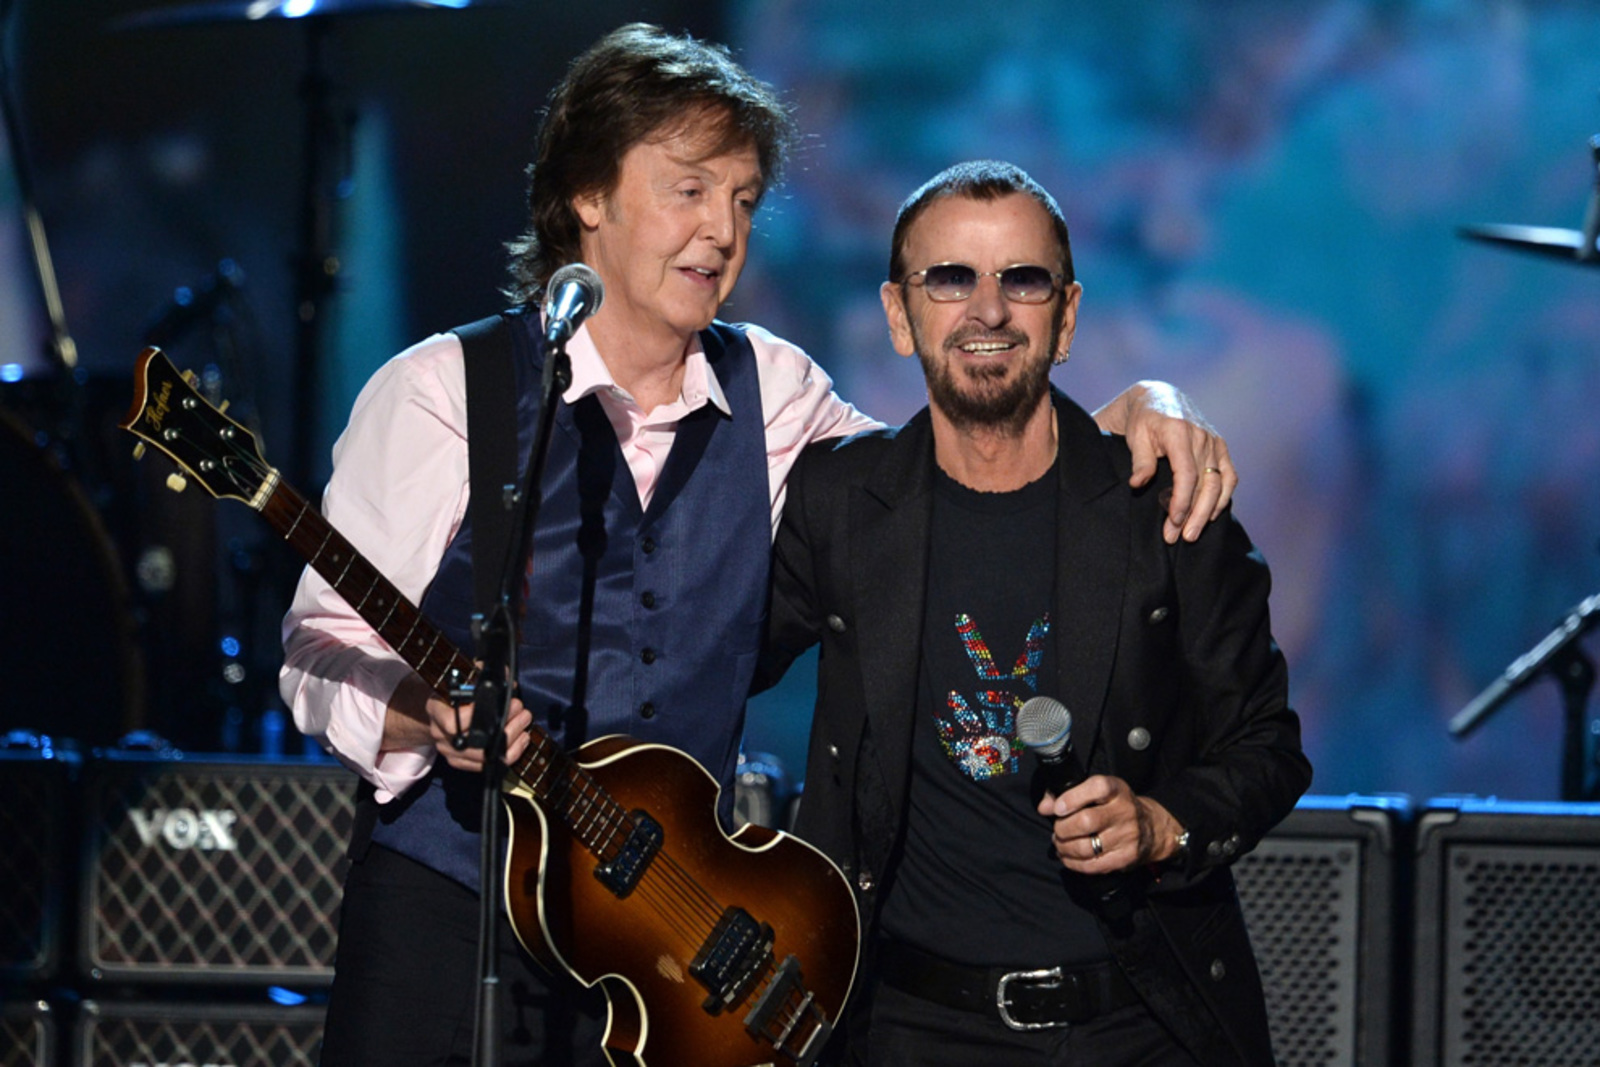 Juntos. Paul McCartney y Ringo Starr interpretaron juntos el tema 'Get Back', un clásico de The Beatles. (ESPECIAL)